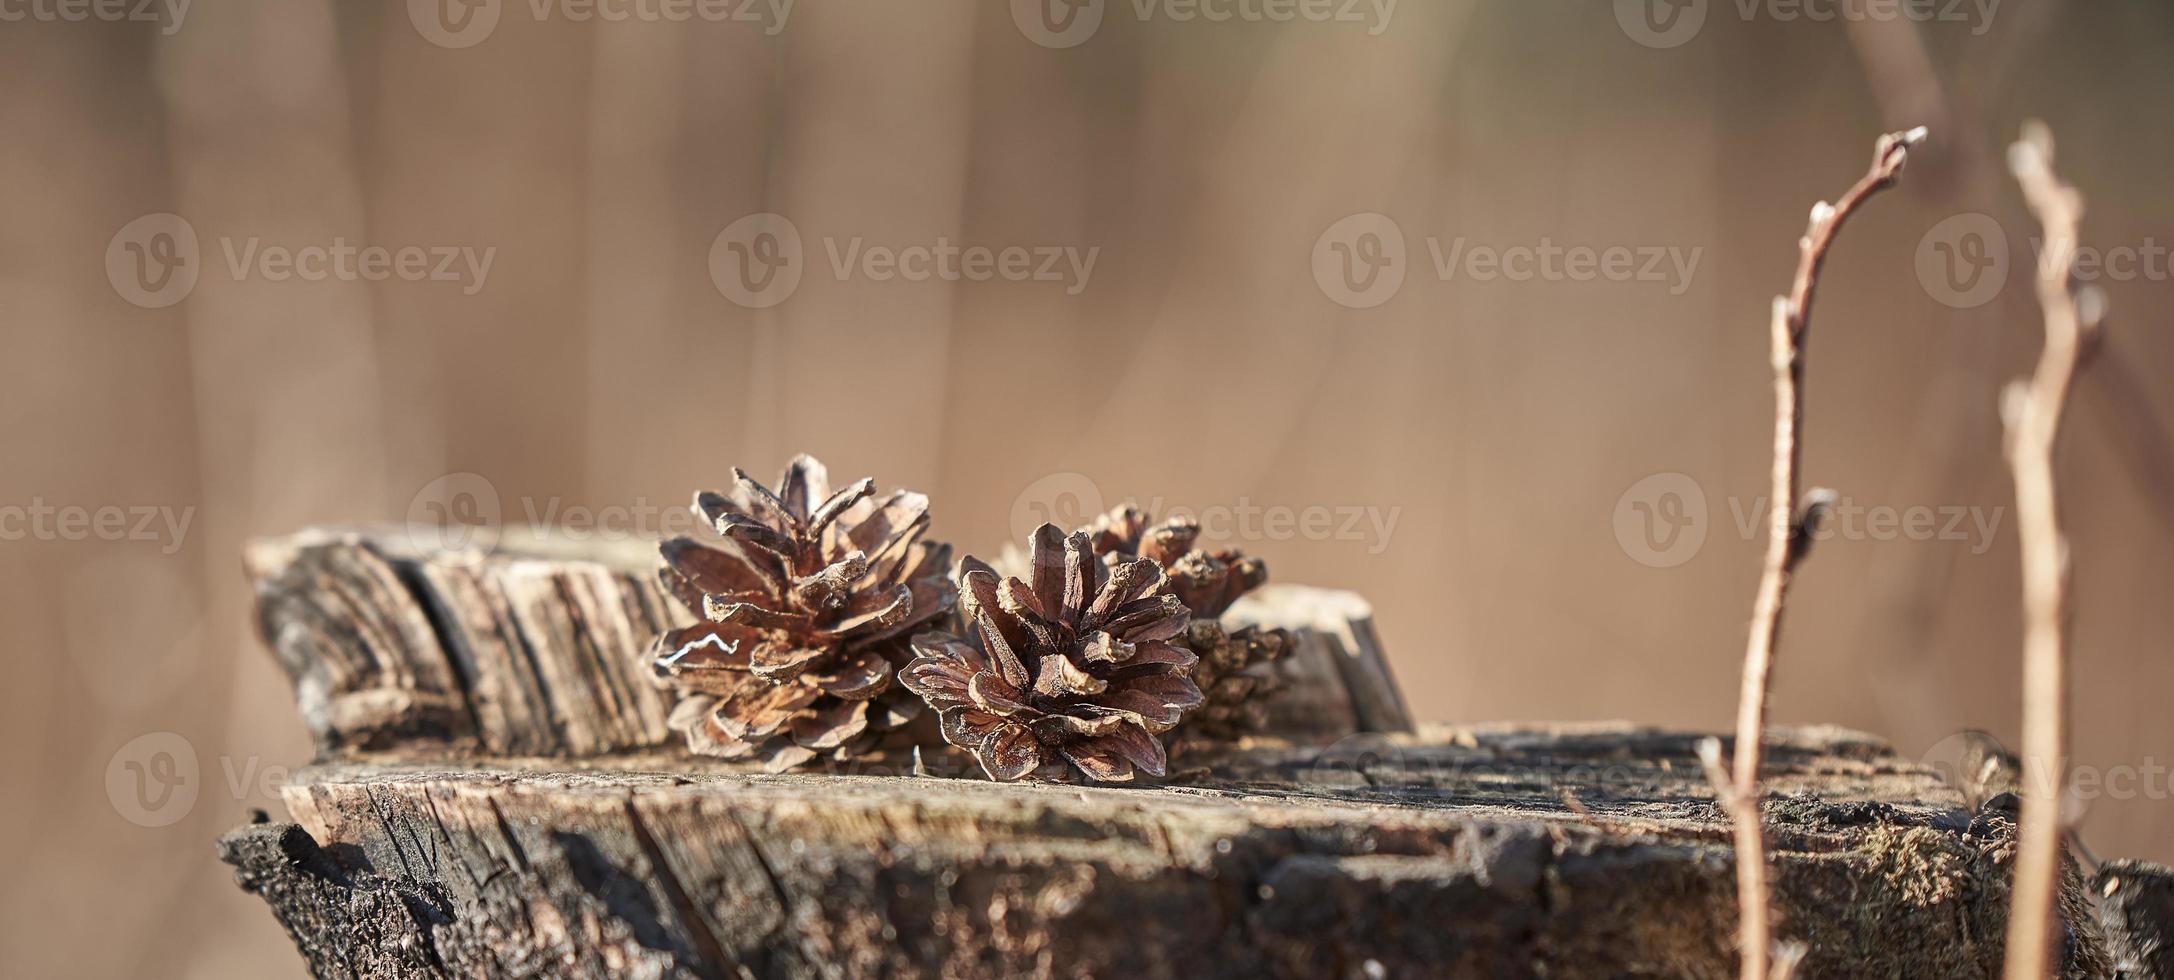 foto de conos de pino en un tocón de madera sobre un fondo marrón en el desenfoque. el fondo del bosque.